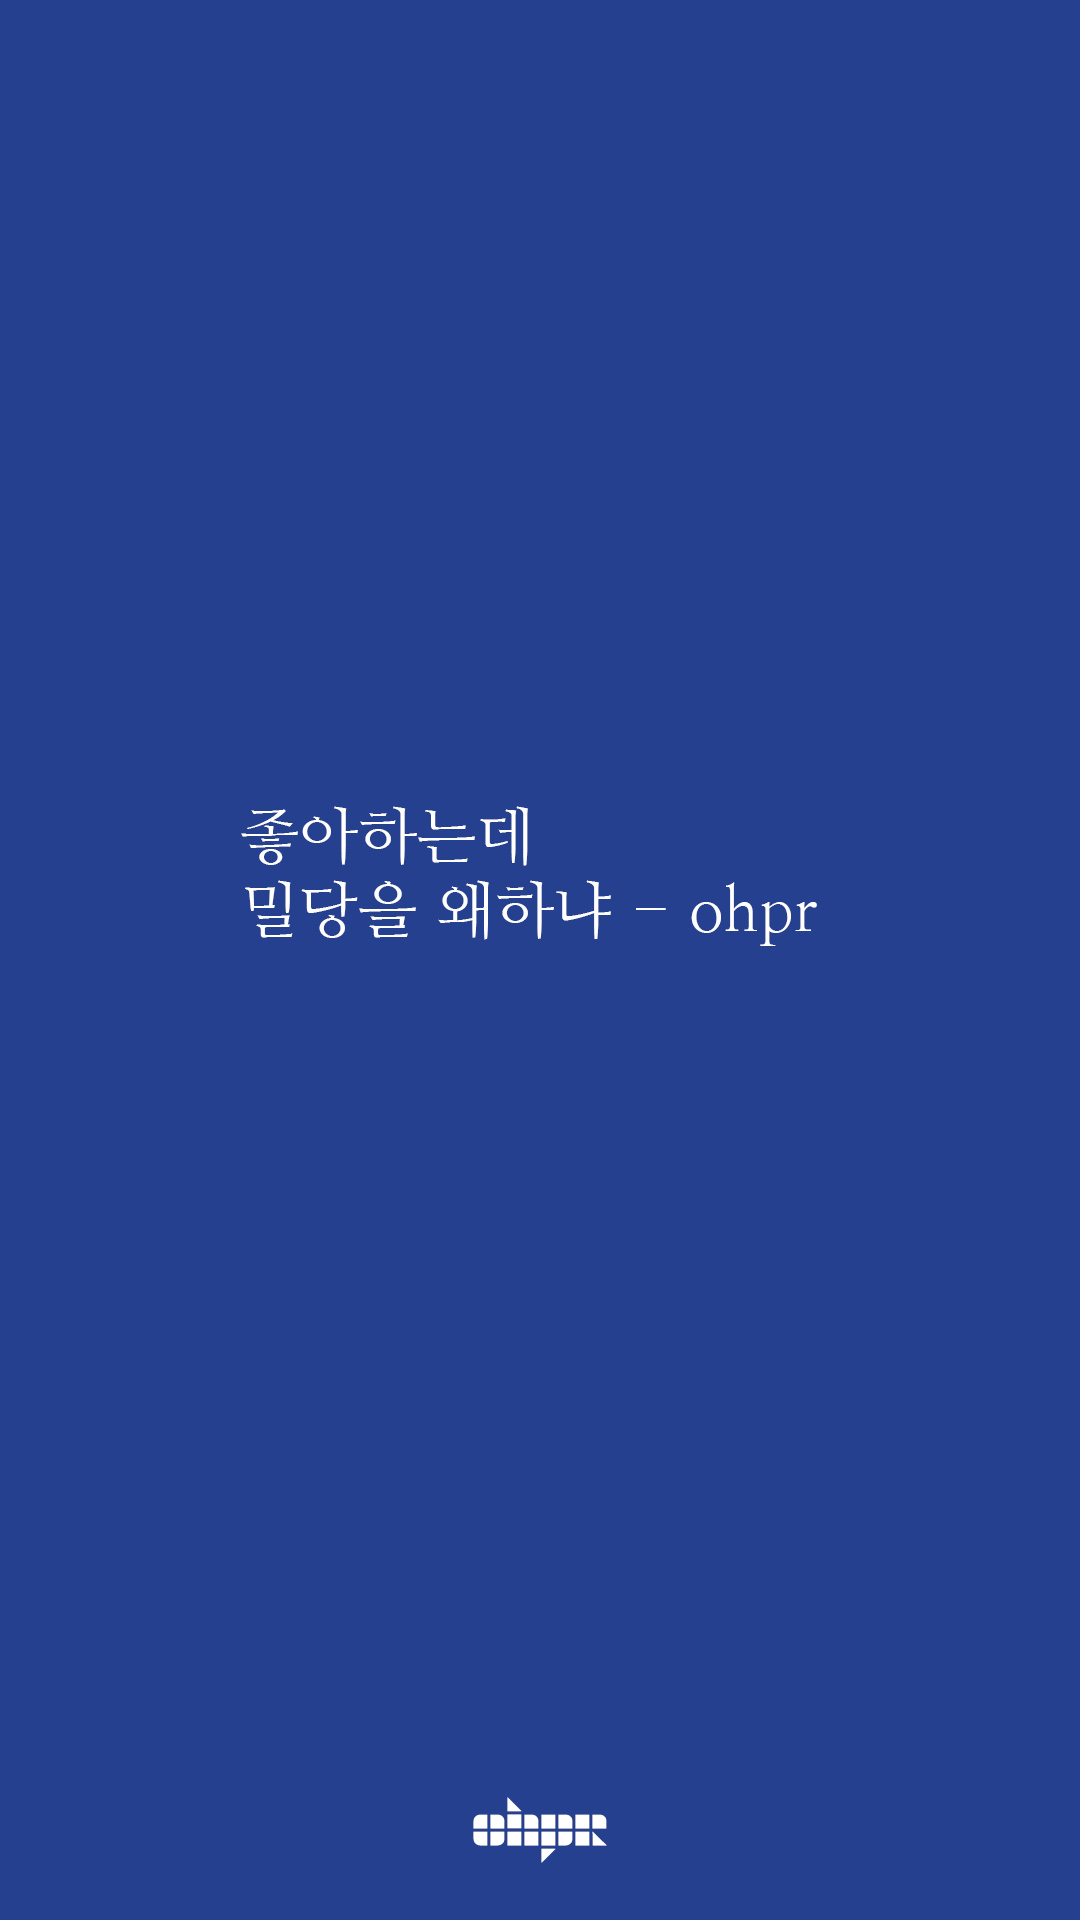 ohpr_wording39